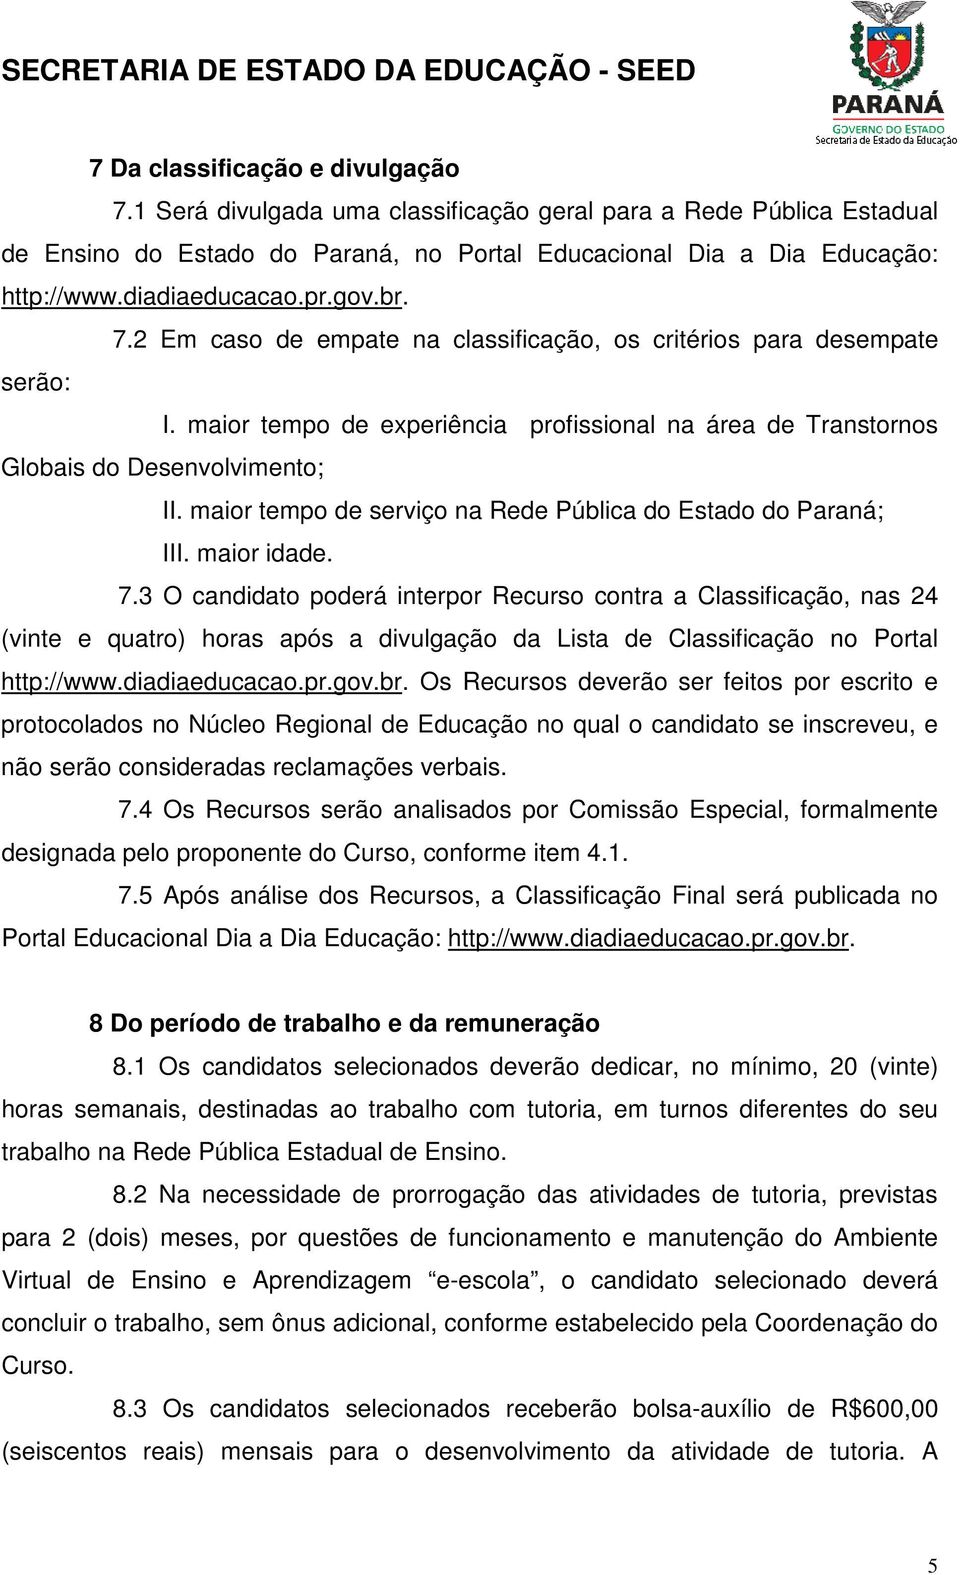 maior tempo de serviço na Rede Pública do Estado do Paraná; III. maior idade. 7.